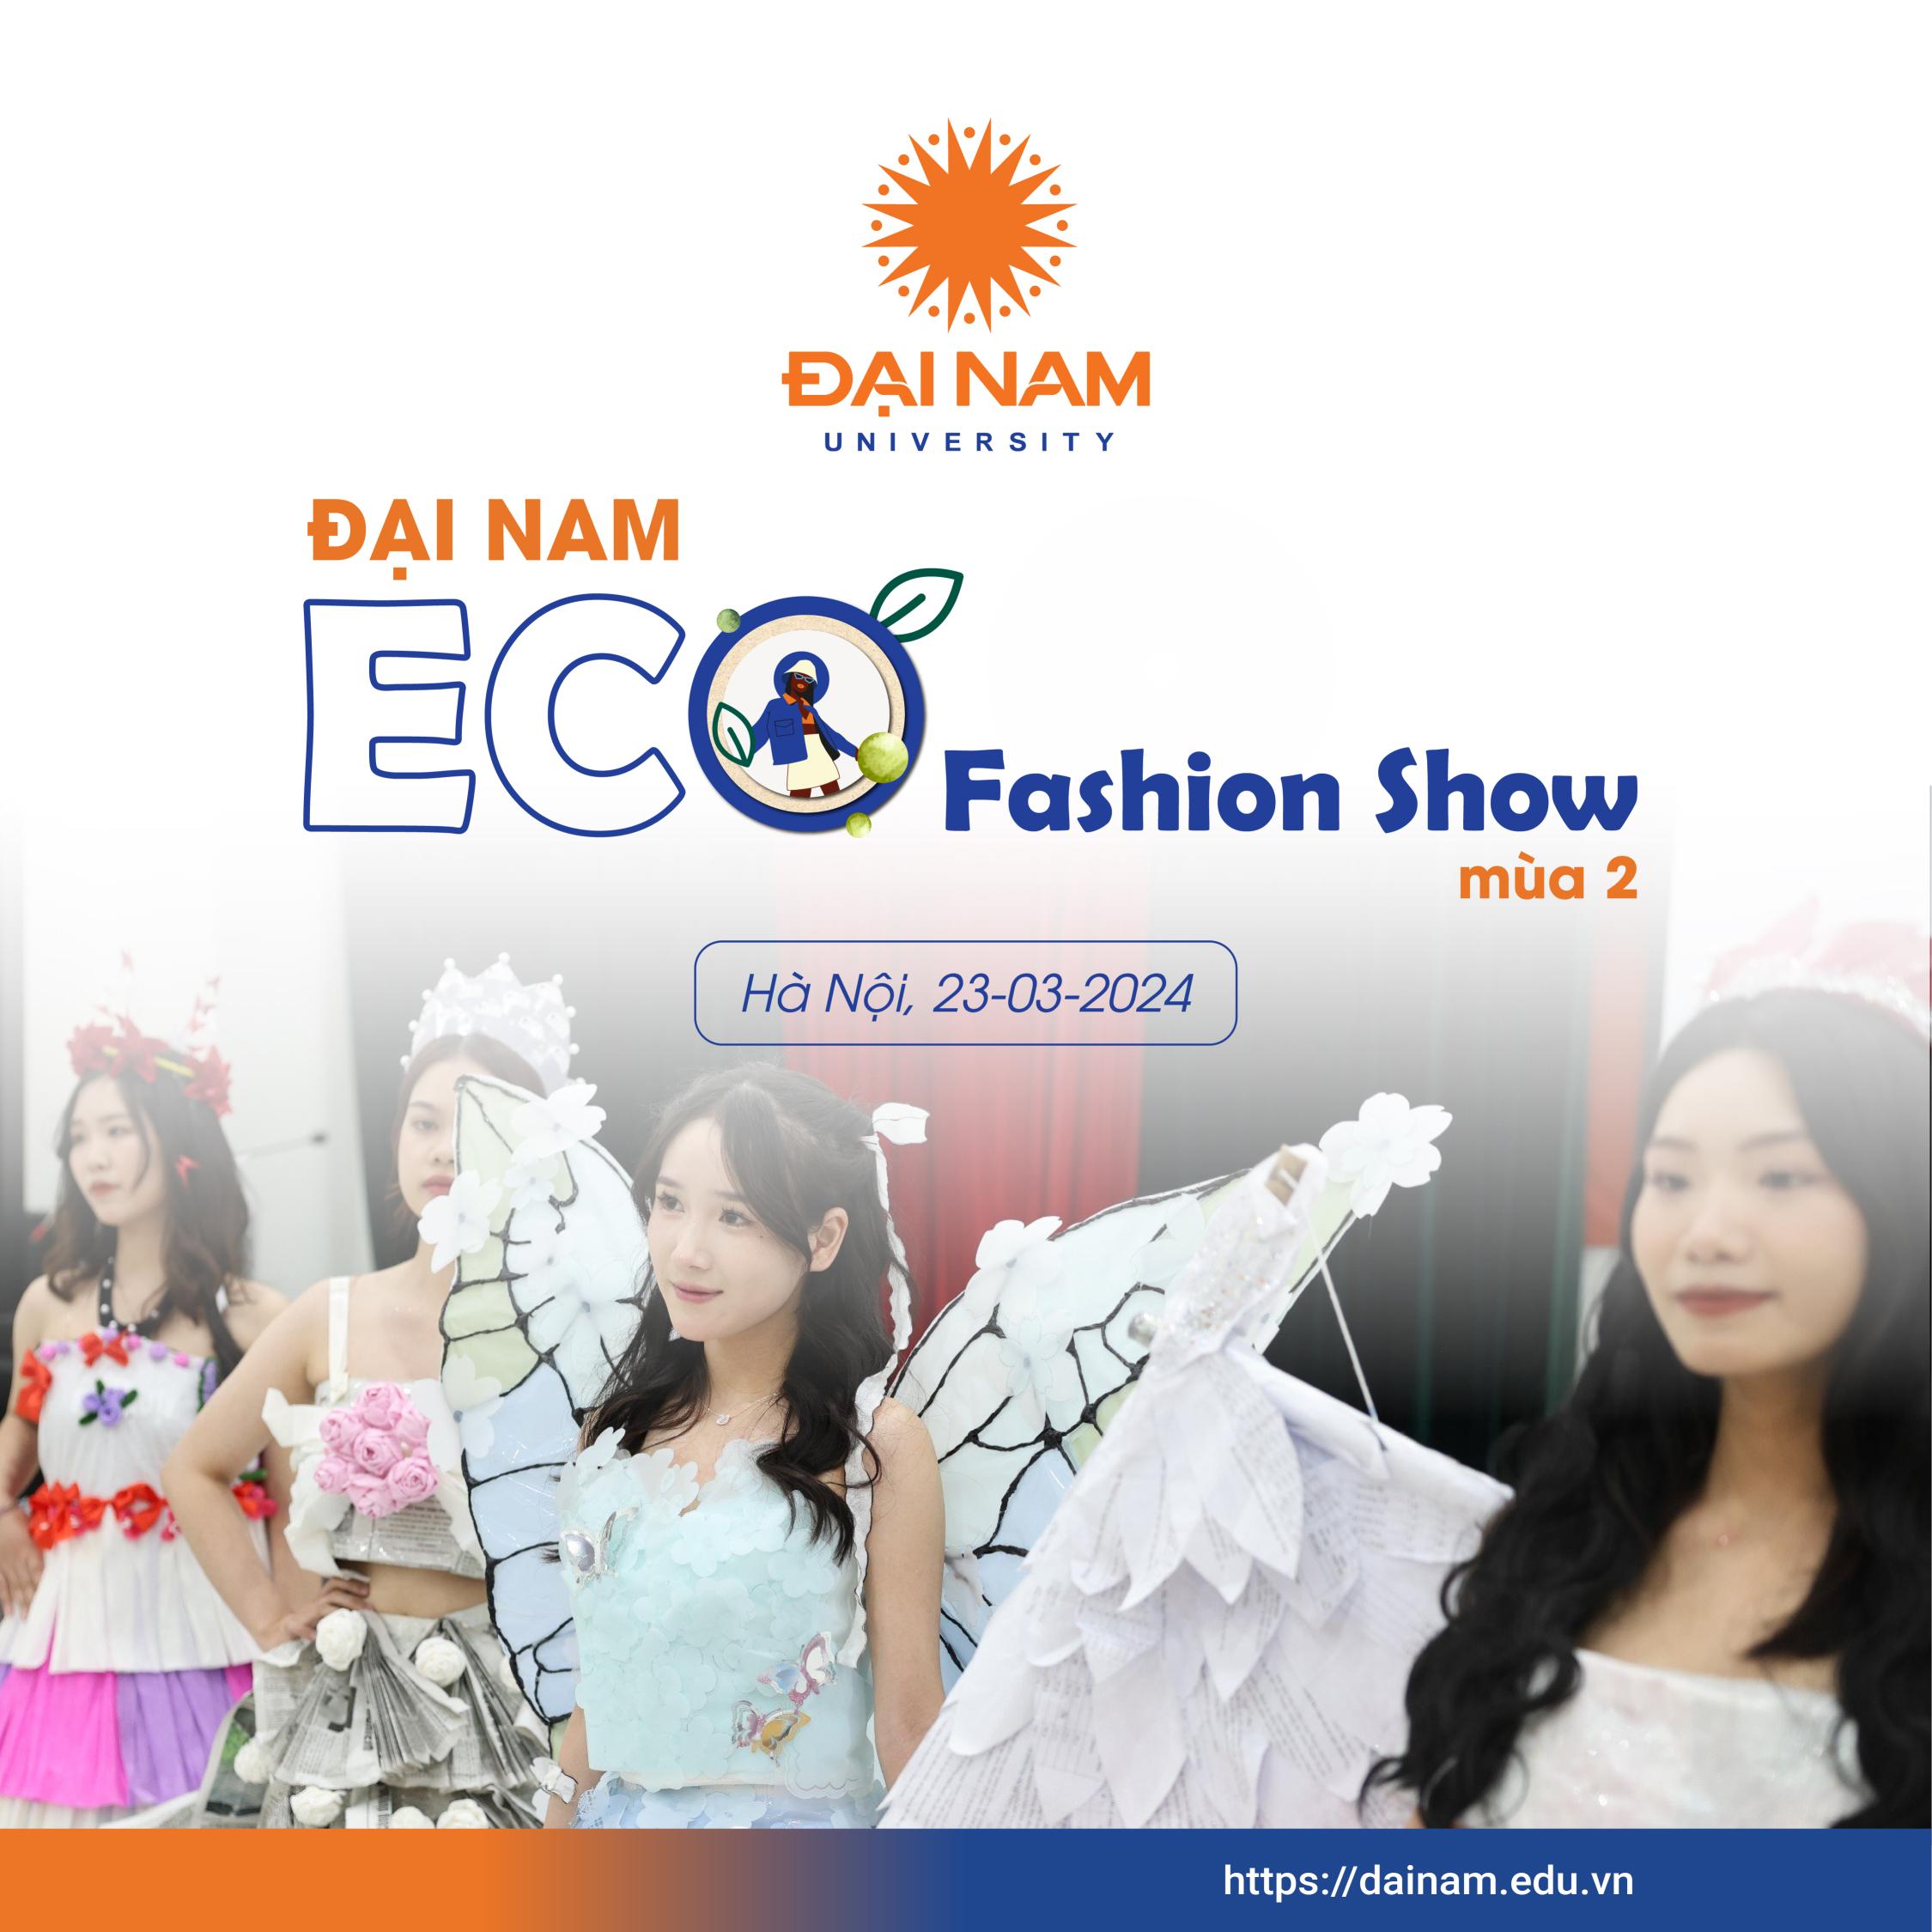 Đại Nam Eco Fashion Show mùa 2